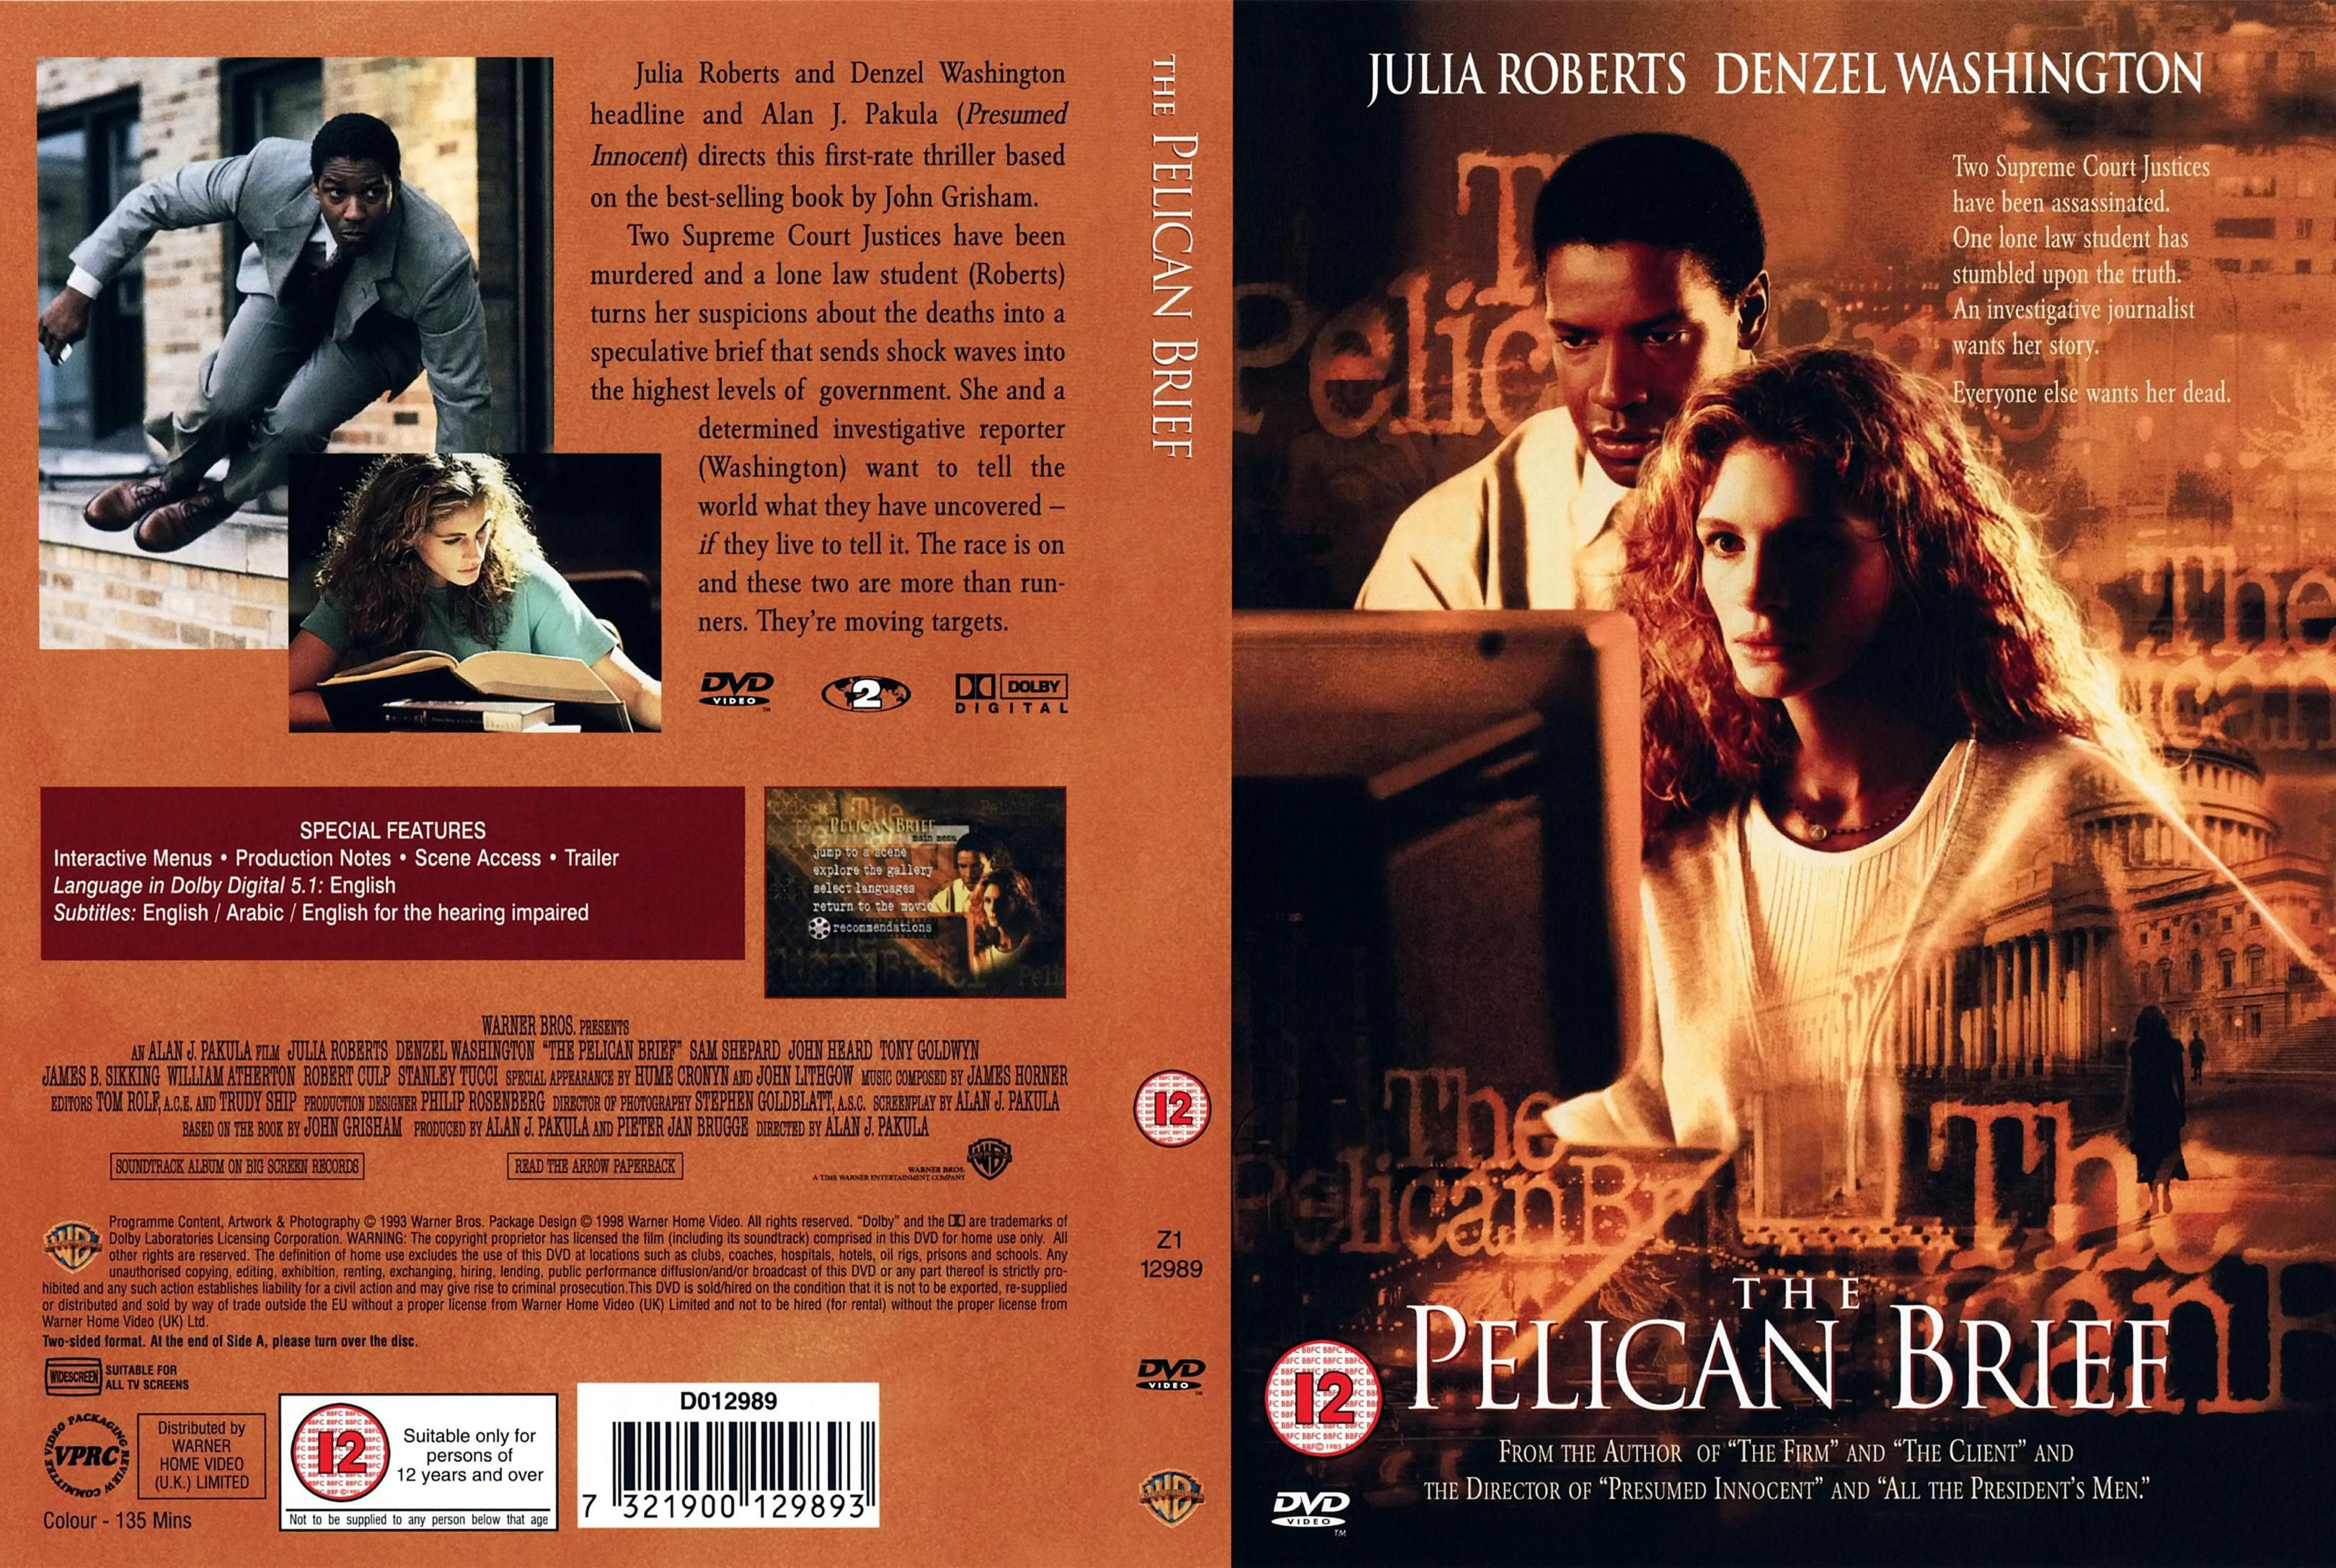 The Pelican Brief (1993) Julia Roberts